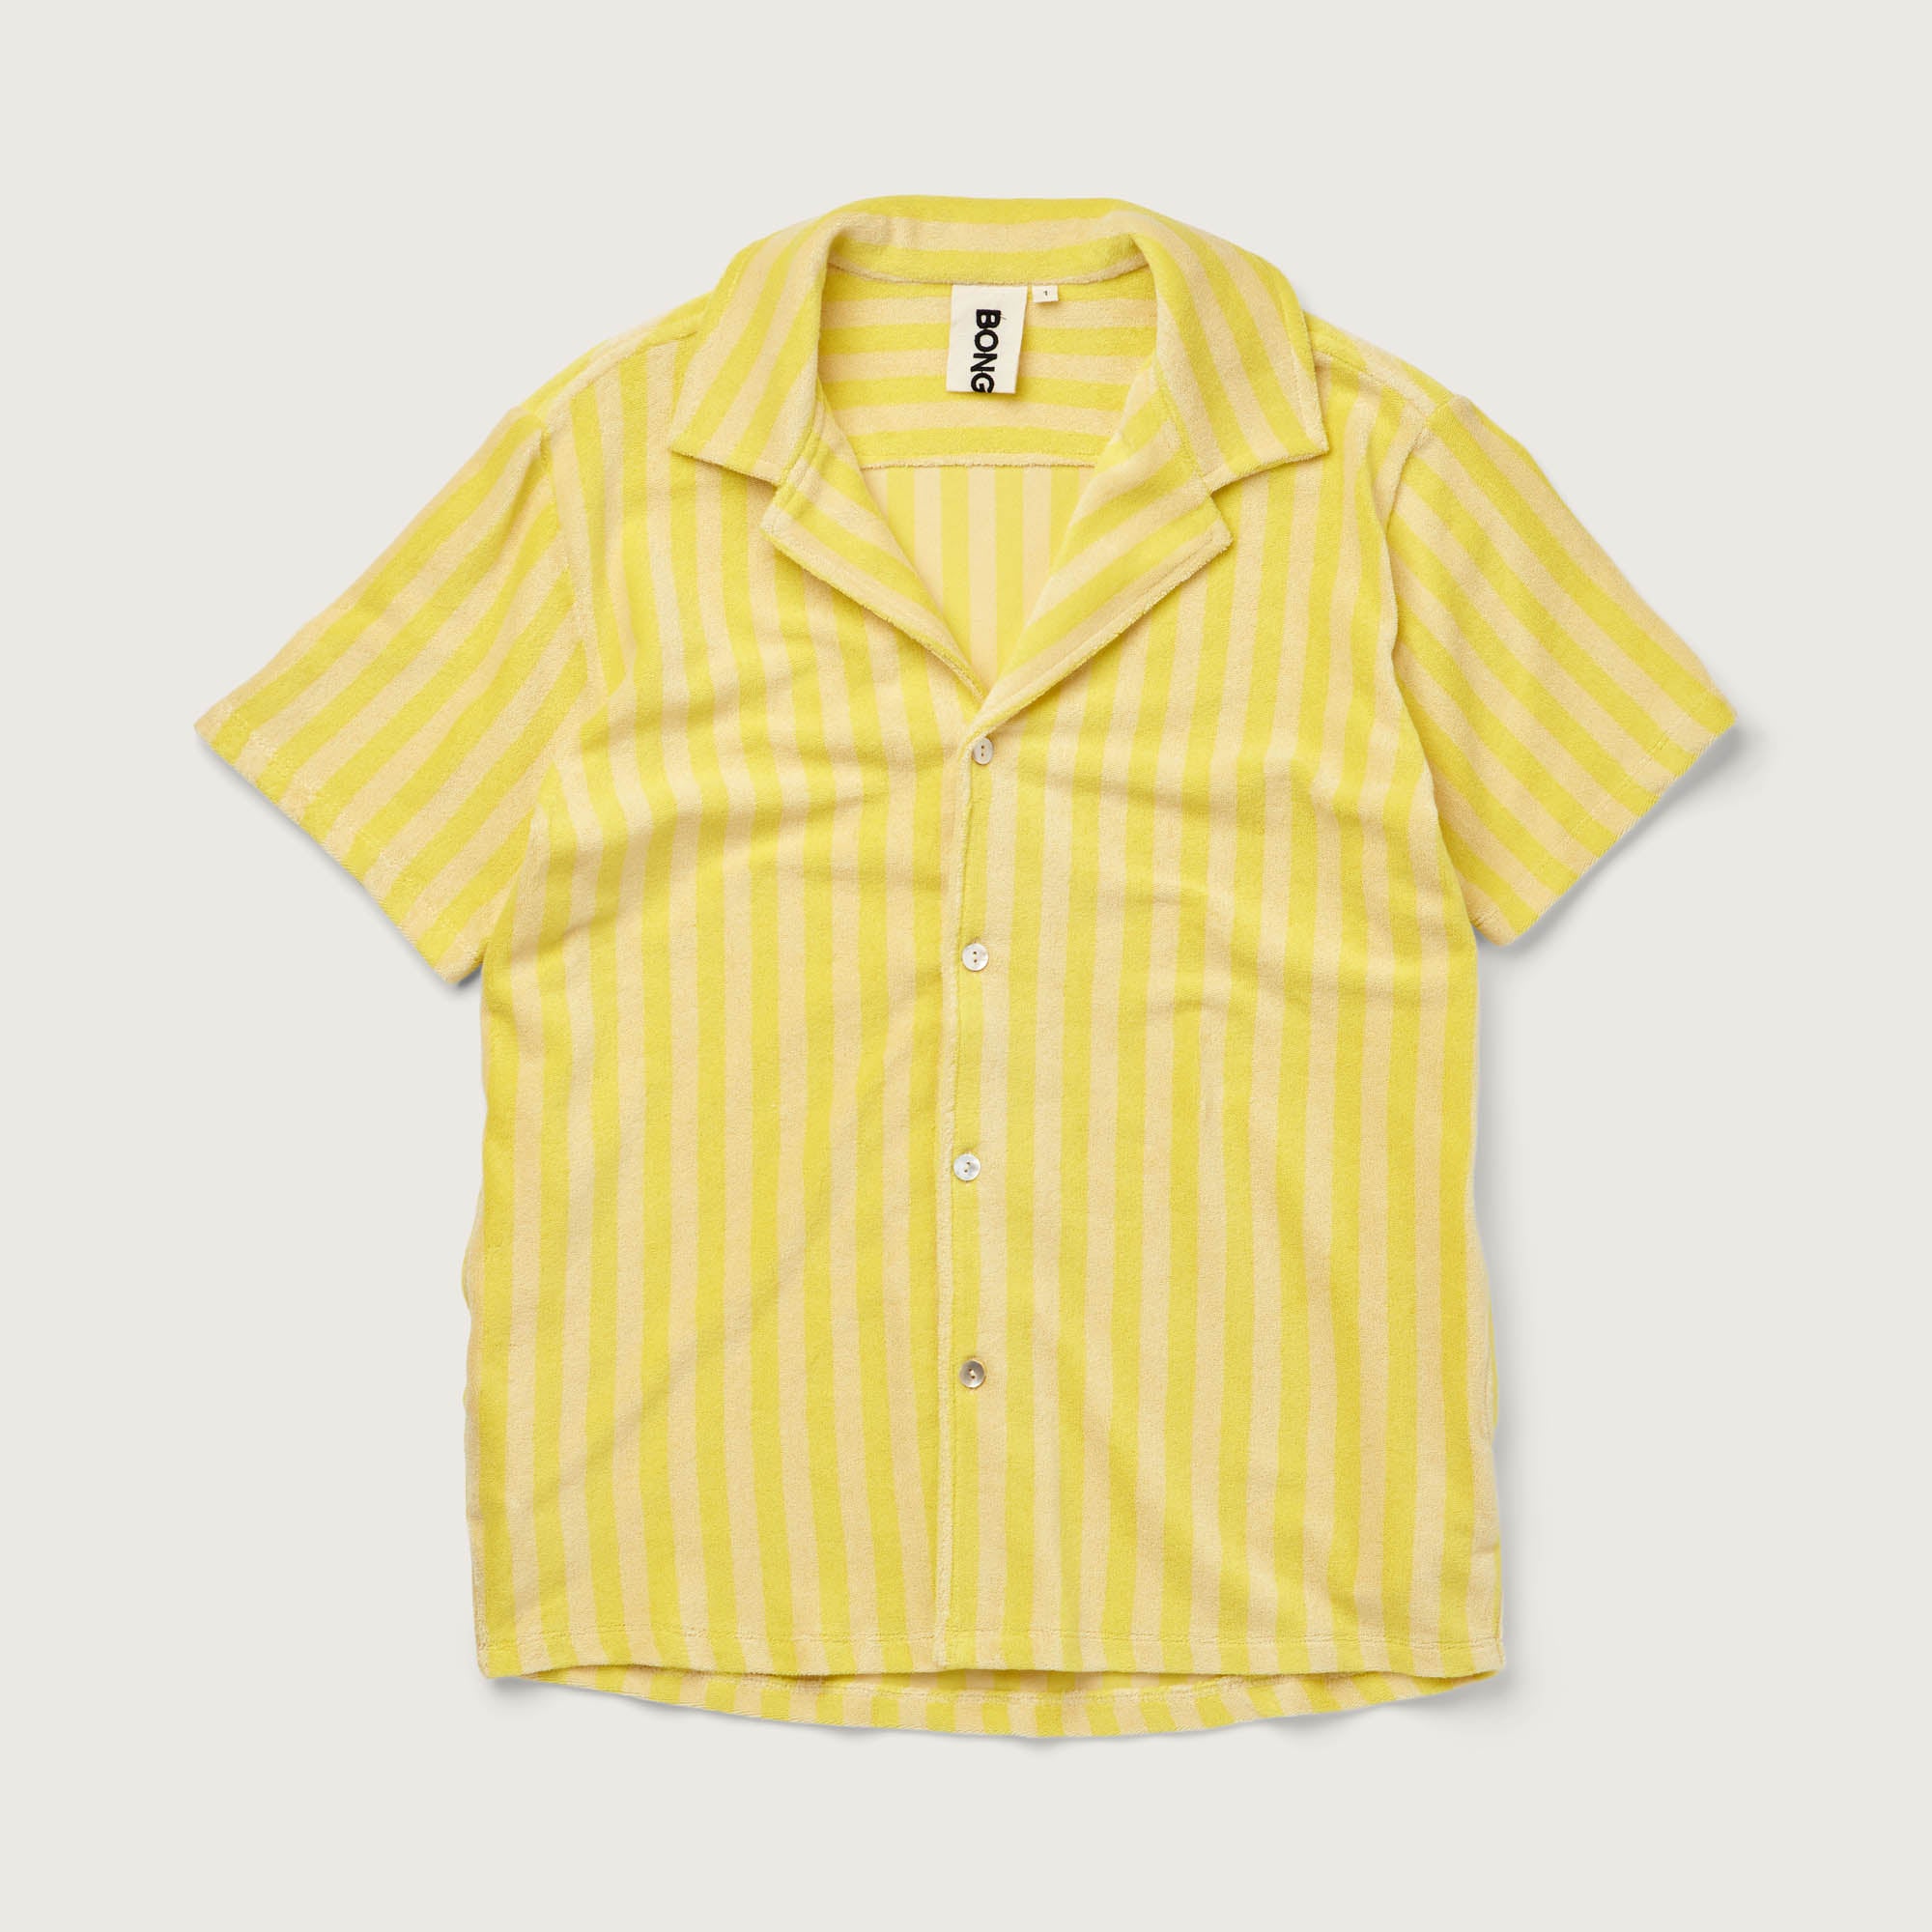 Bongusta, Product image, Naram Shirt, pristine & neon yellow, 5 of 5}